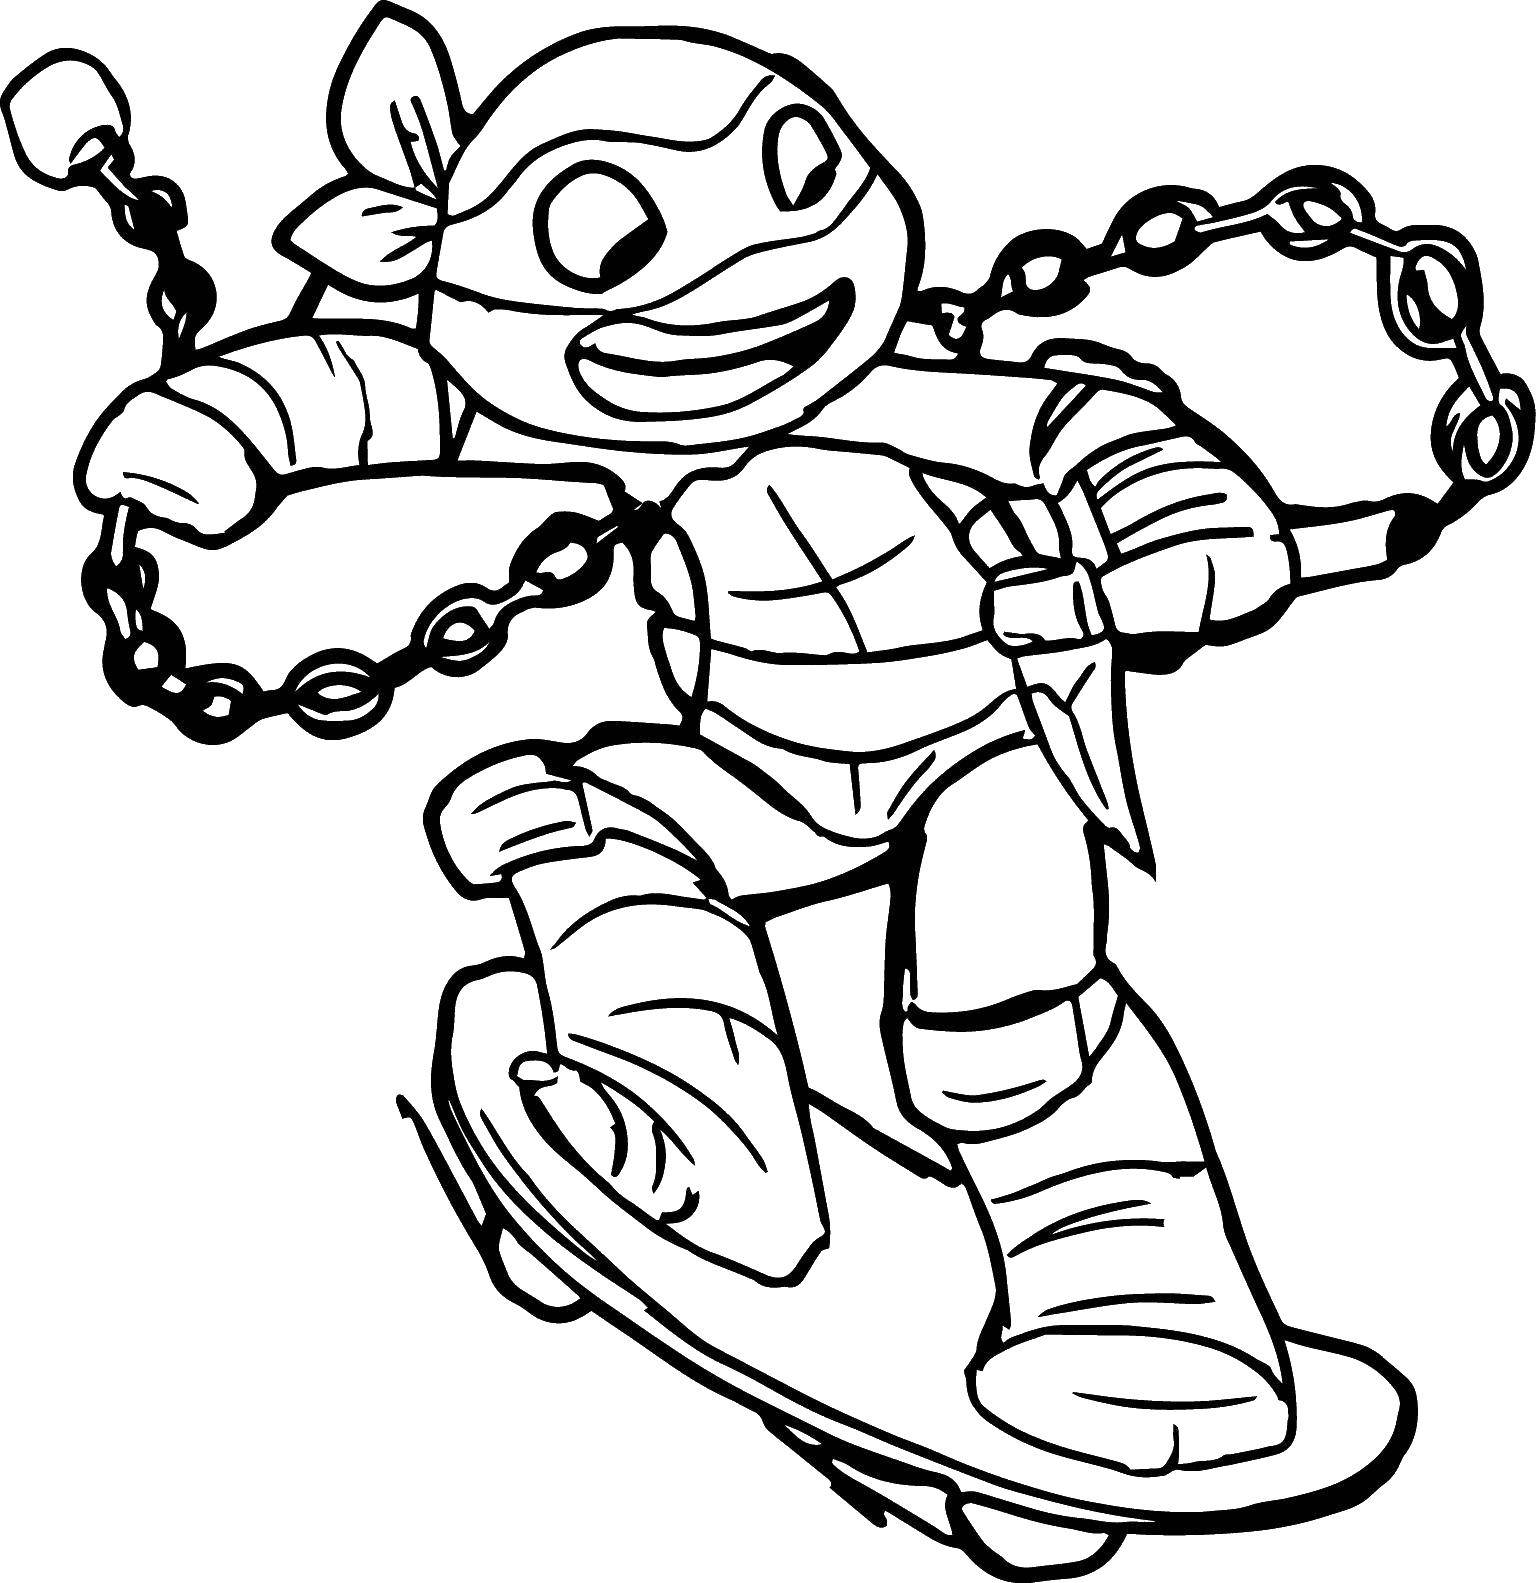 Название: Раскраска Микеланджело обожает скейт. Категория: черепашки ниндзя. Теги: Комиксы, Черепашки Ниндзя.